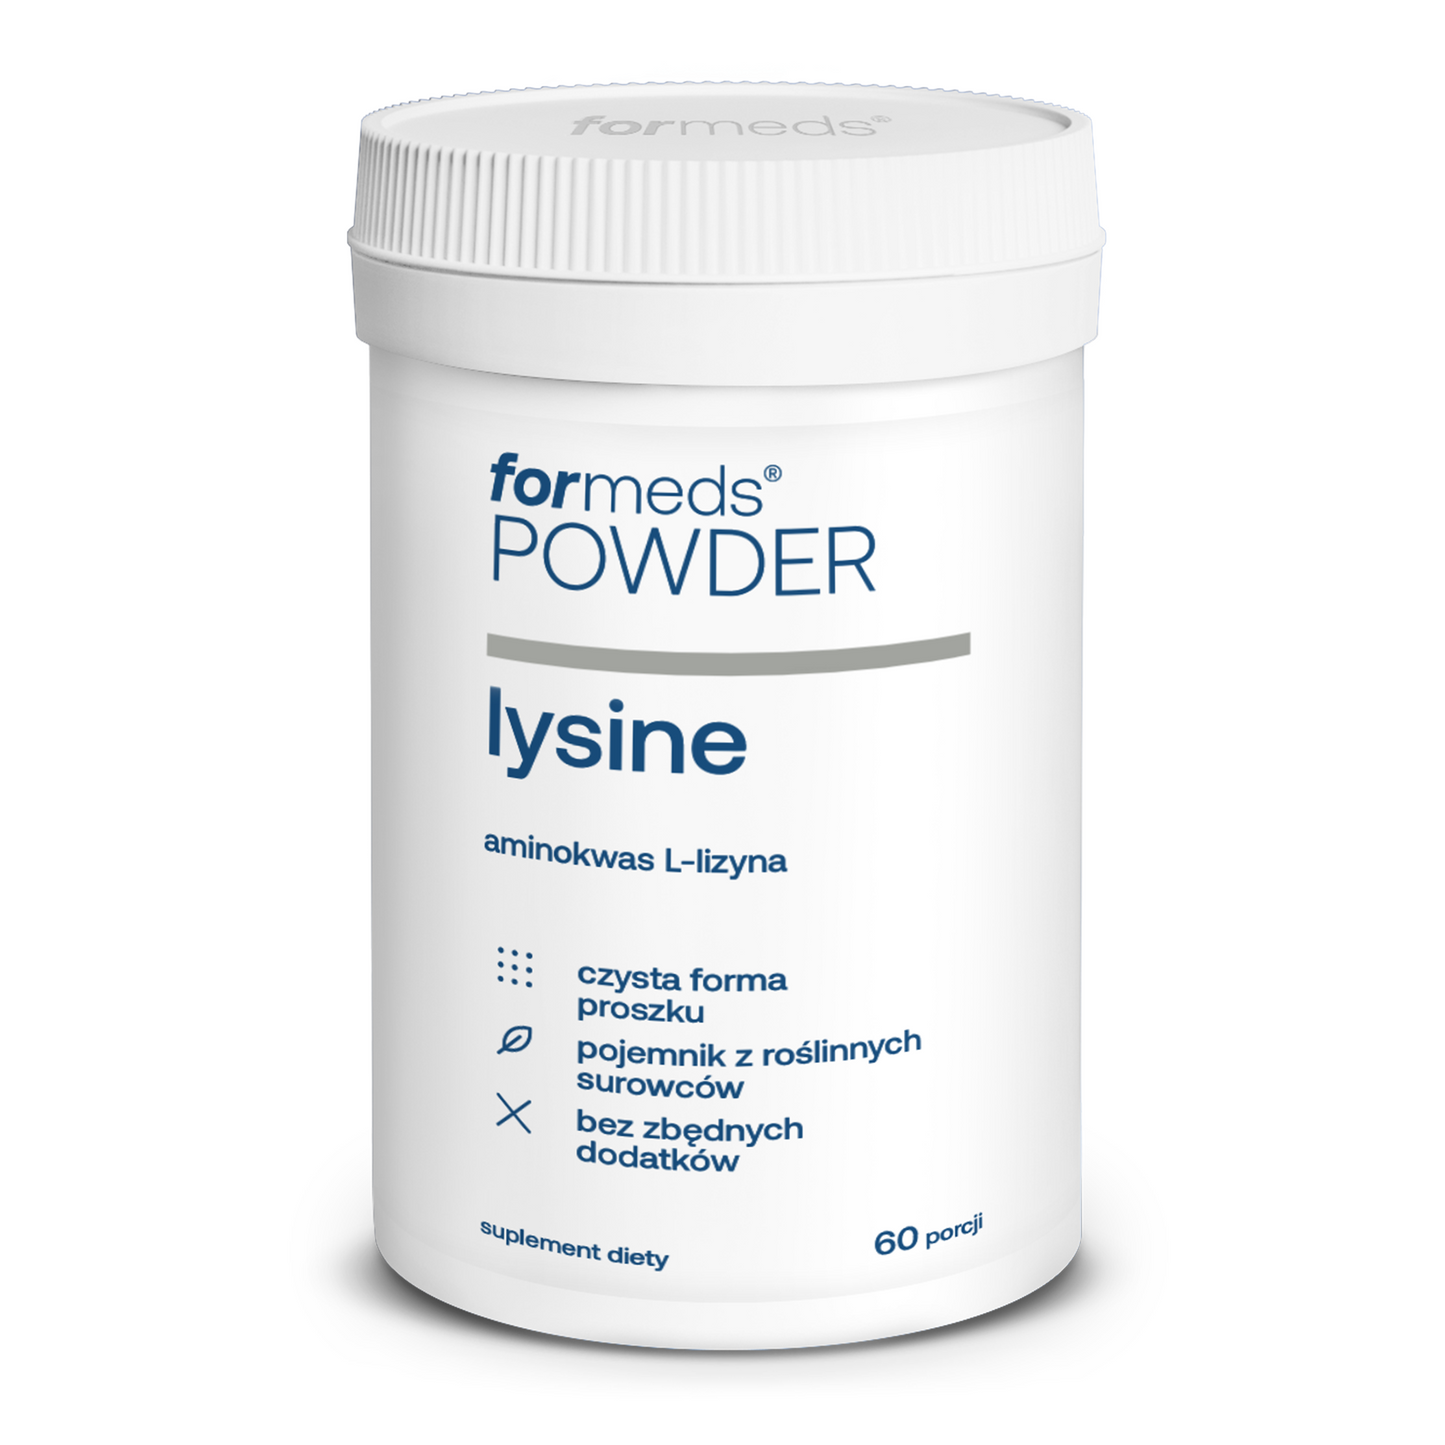 POWDER lysine